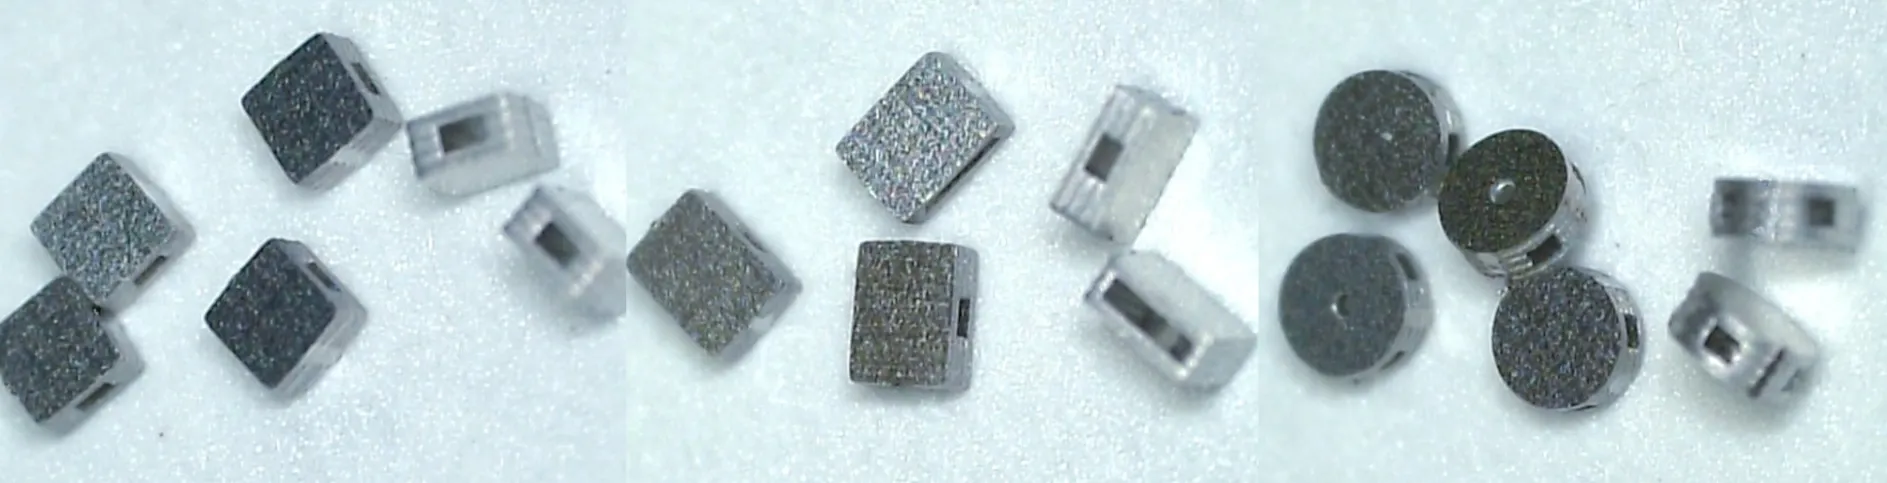 アロン社の3D極小製品の拡散接合事例